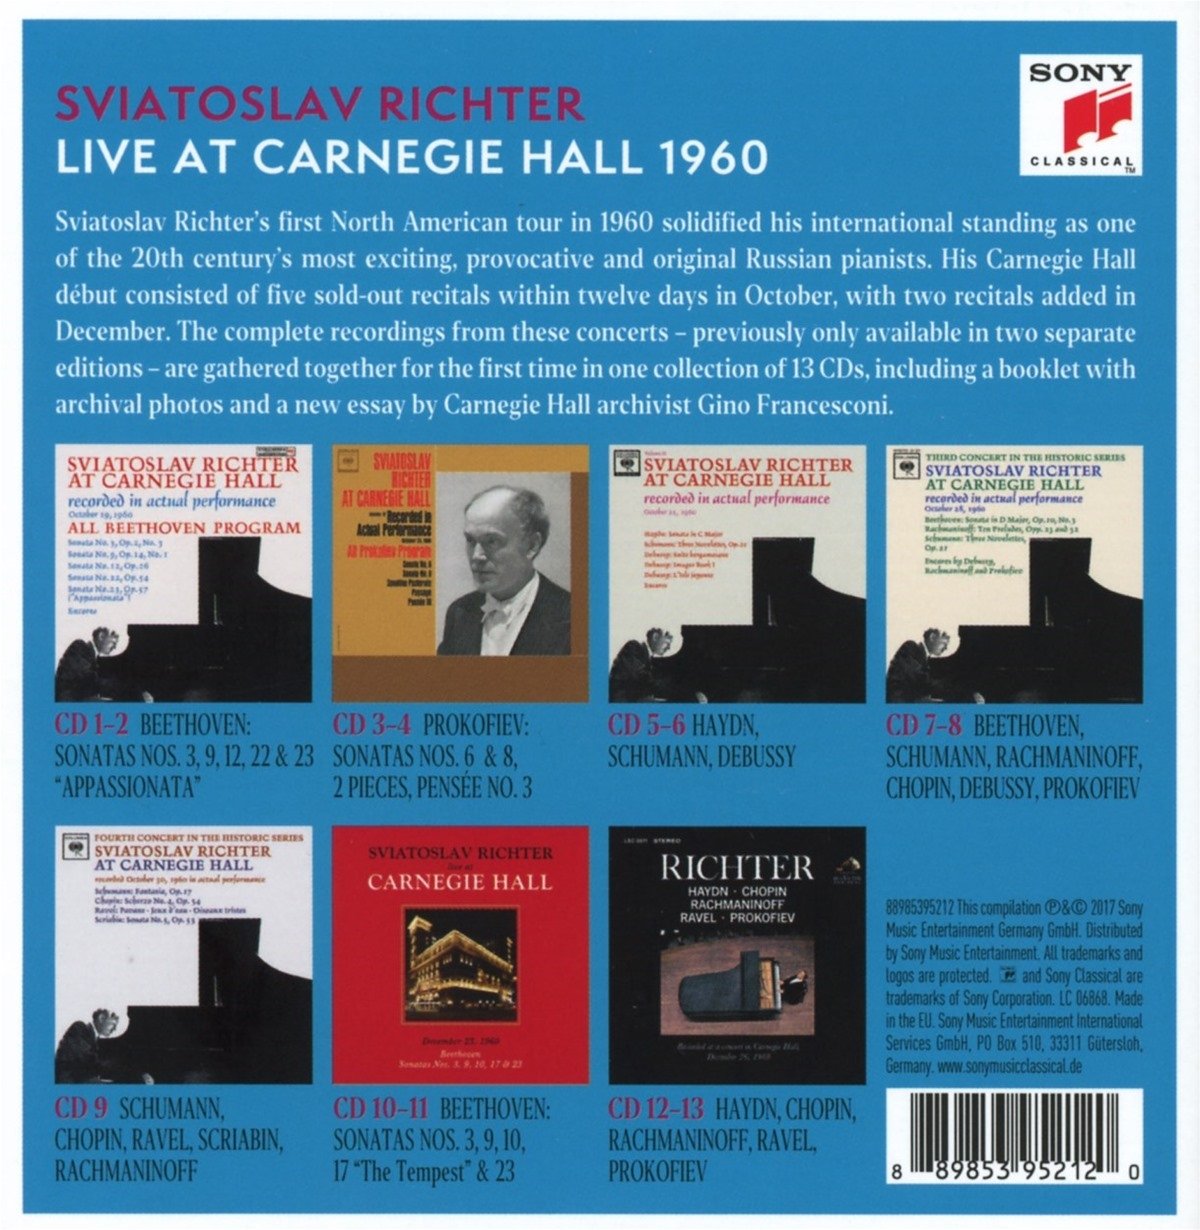 SVIATOSLAV RICHTER: LIVE AT CARNEGIE HALL 1960 (13 CDs)